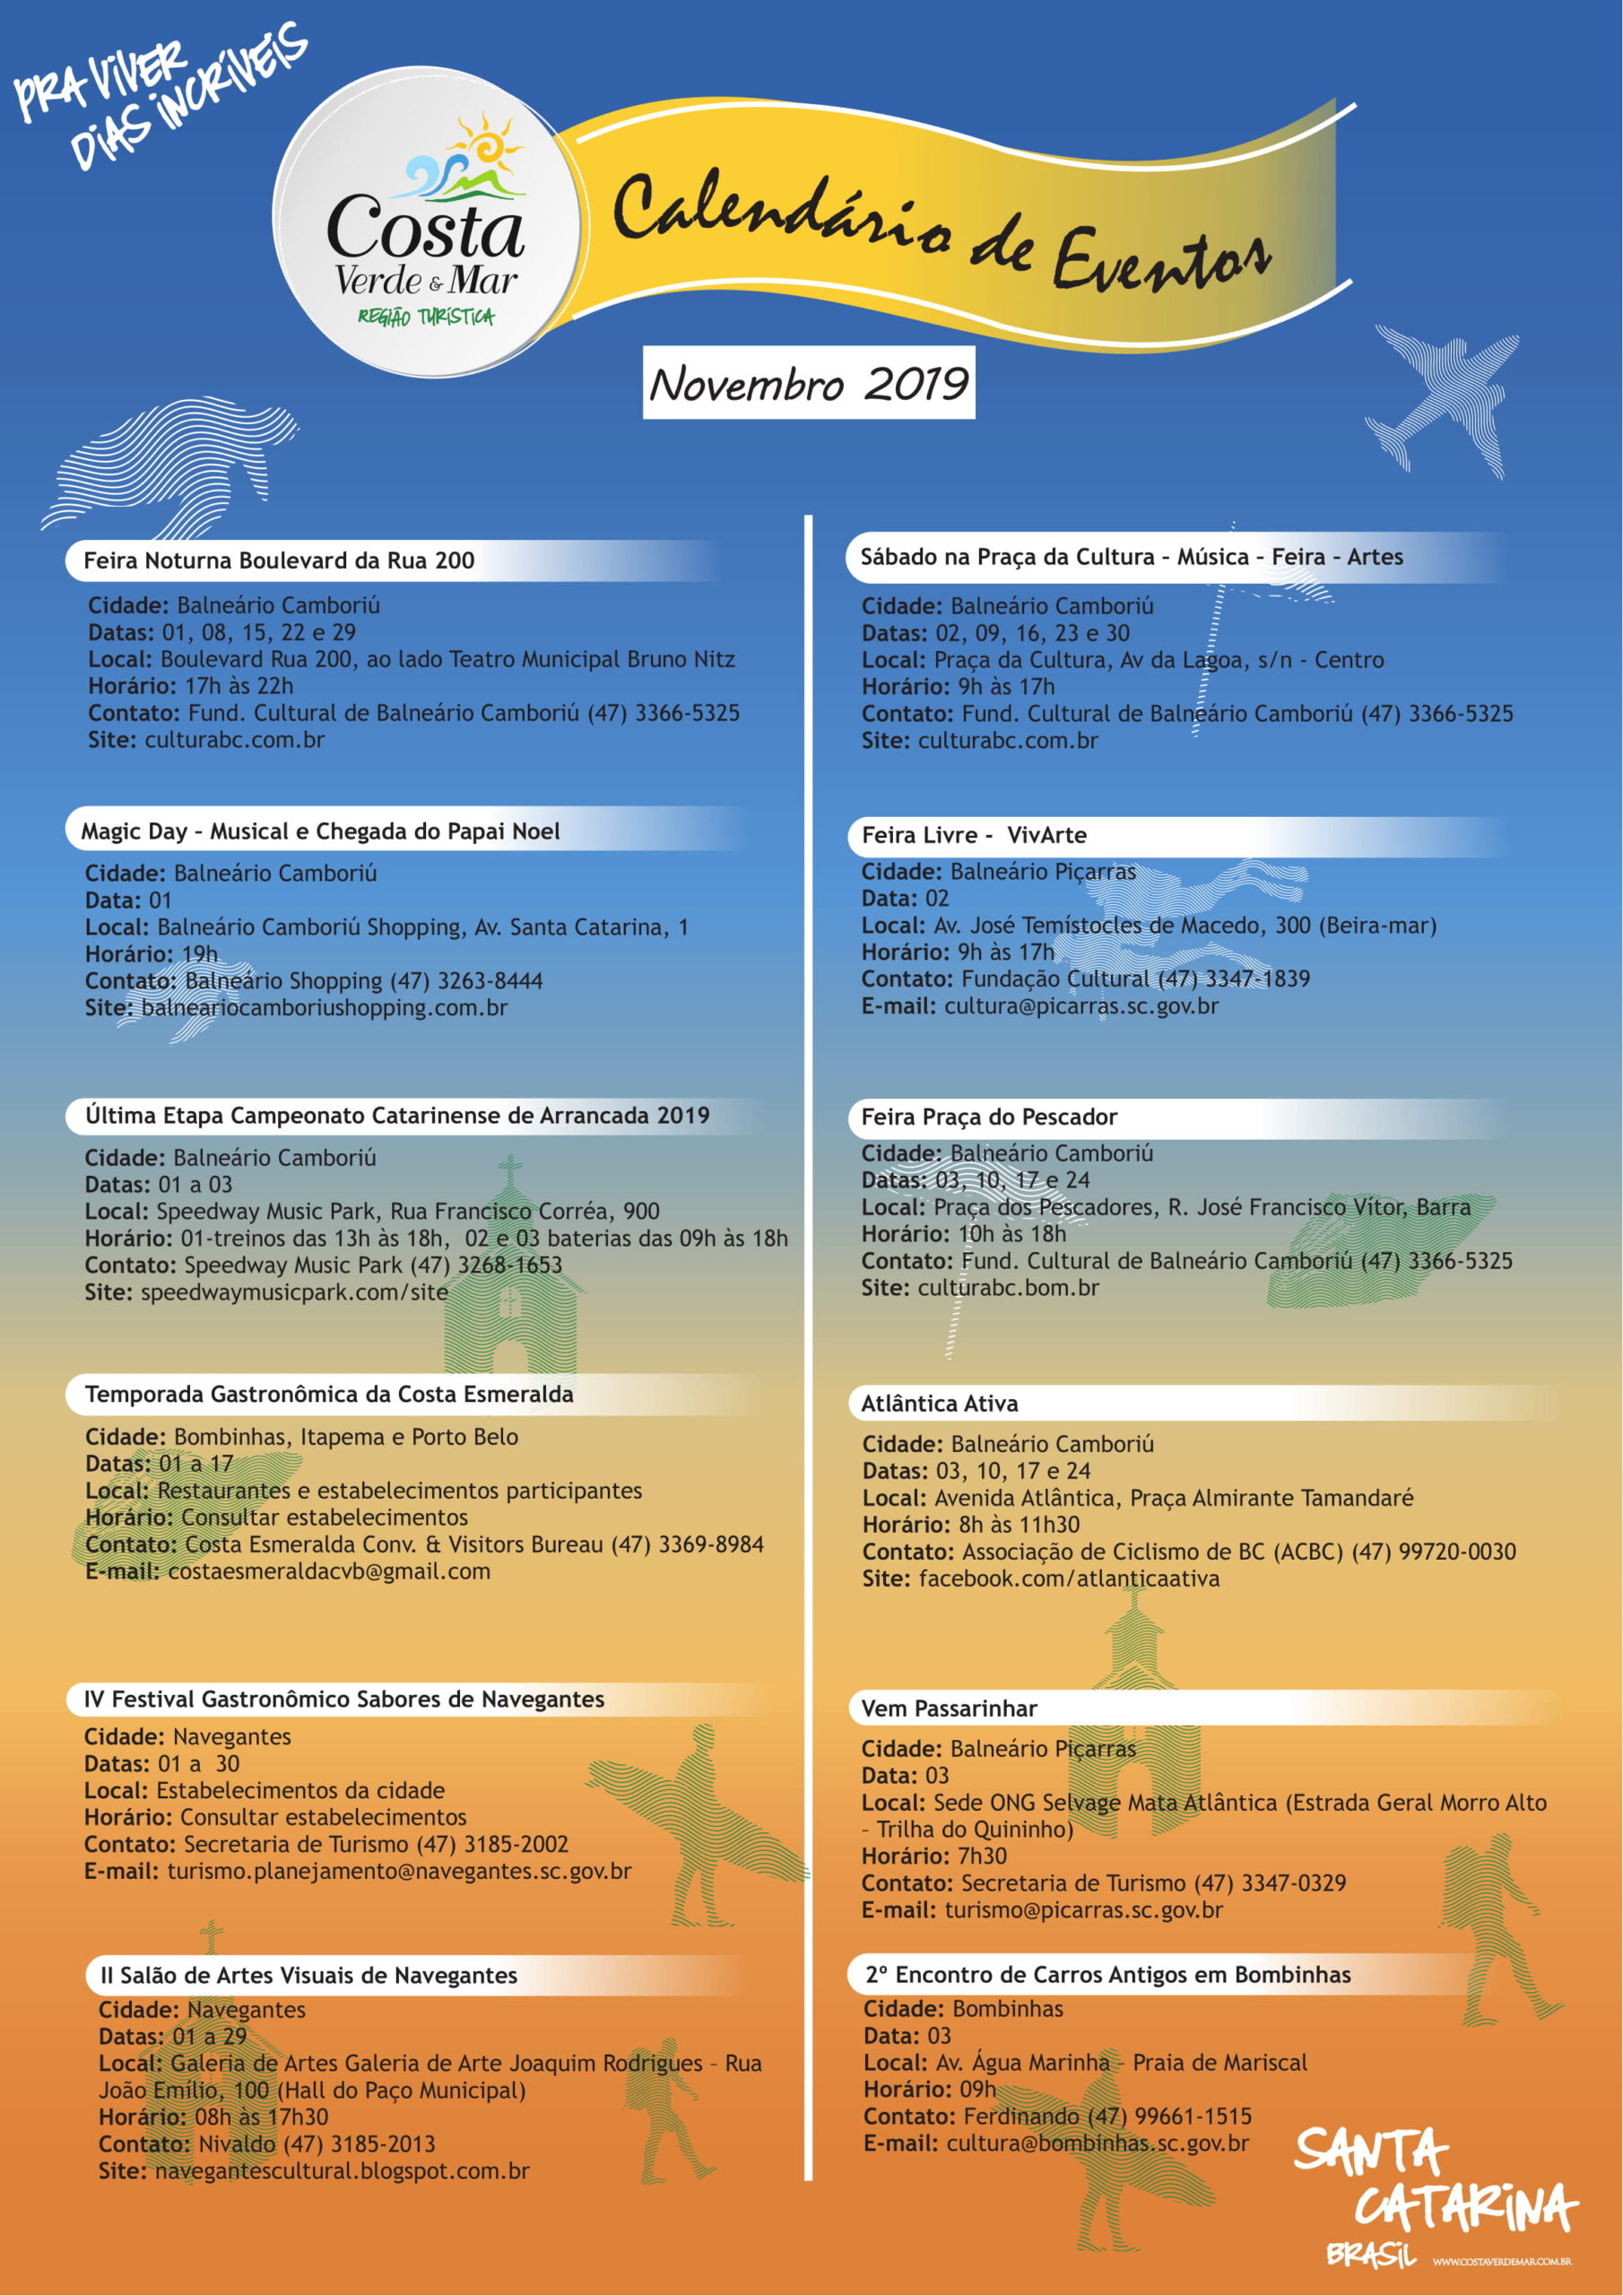 You are currently viewing Confira o Calendário de Eventos da Região Turística Costa Verde & Mar do mês de Novembro